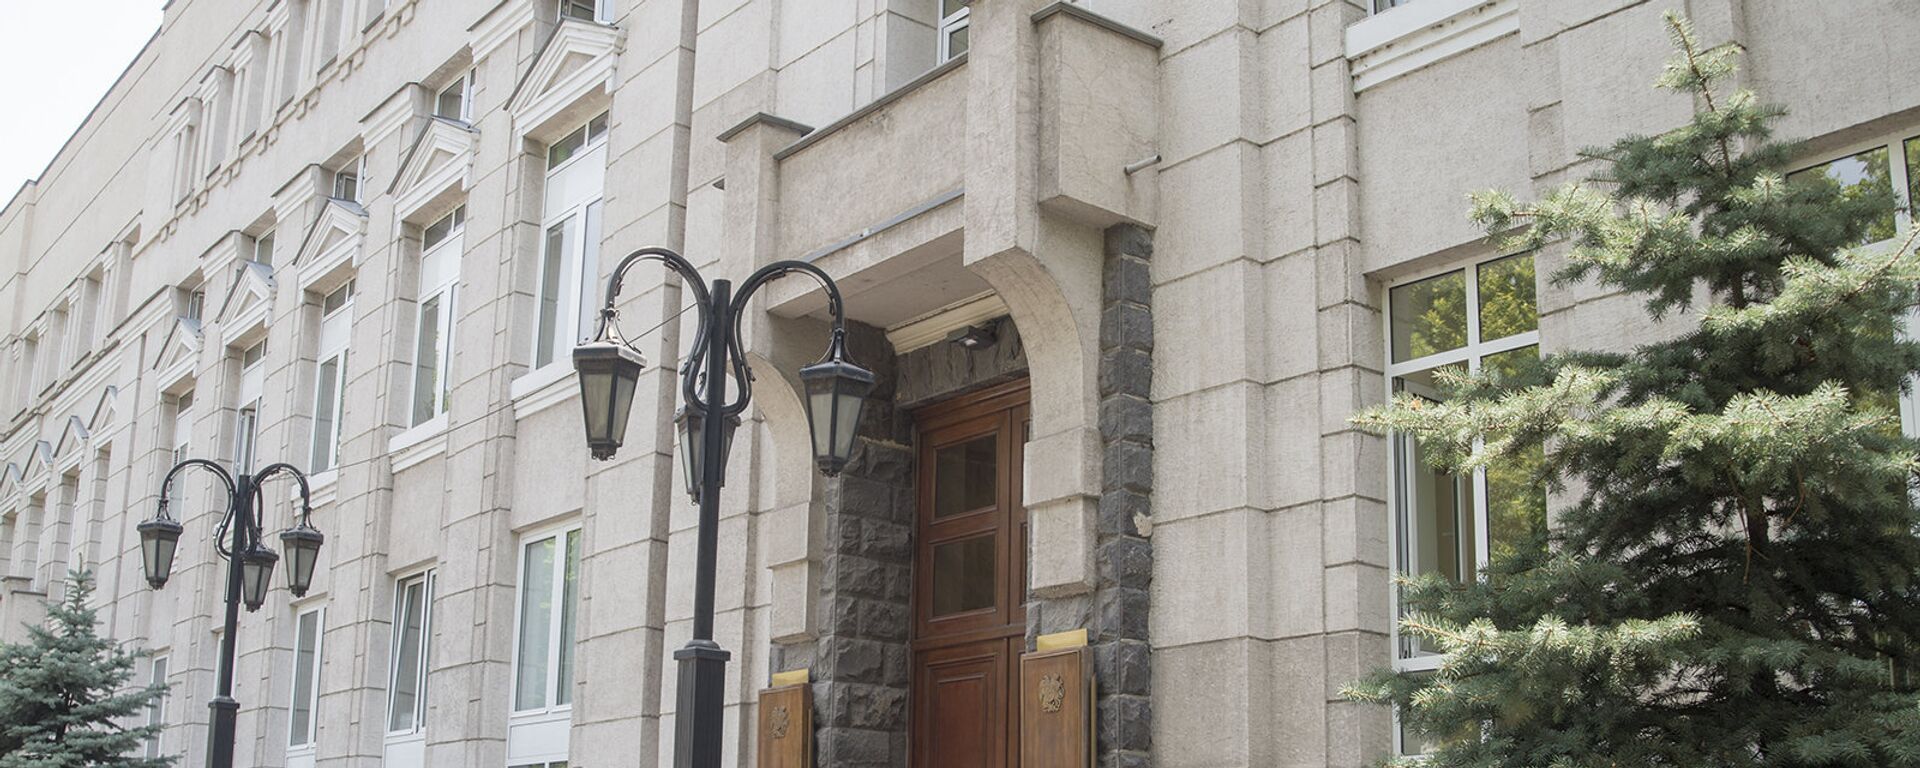 Здание Центрального банка Армении  - Sputnik Армения, 1920, 13.10.2021